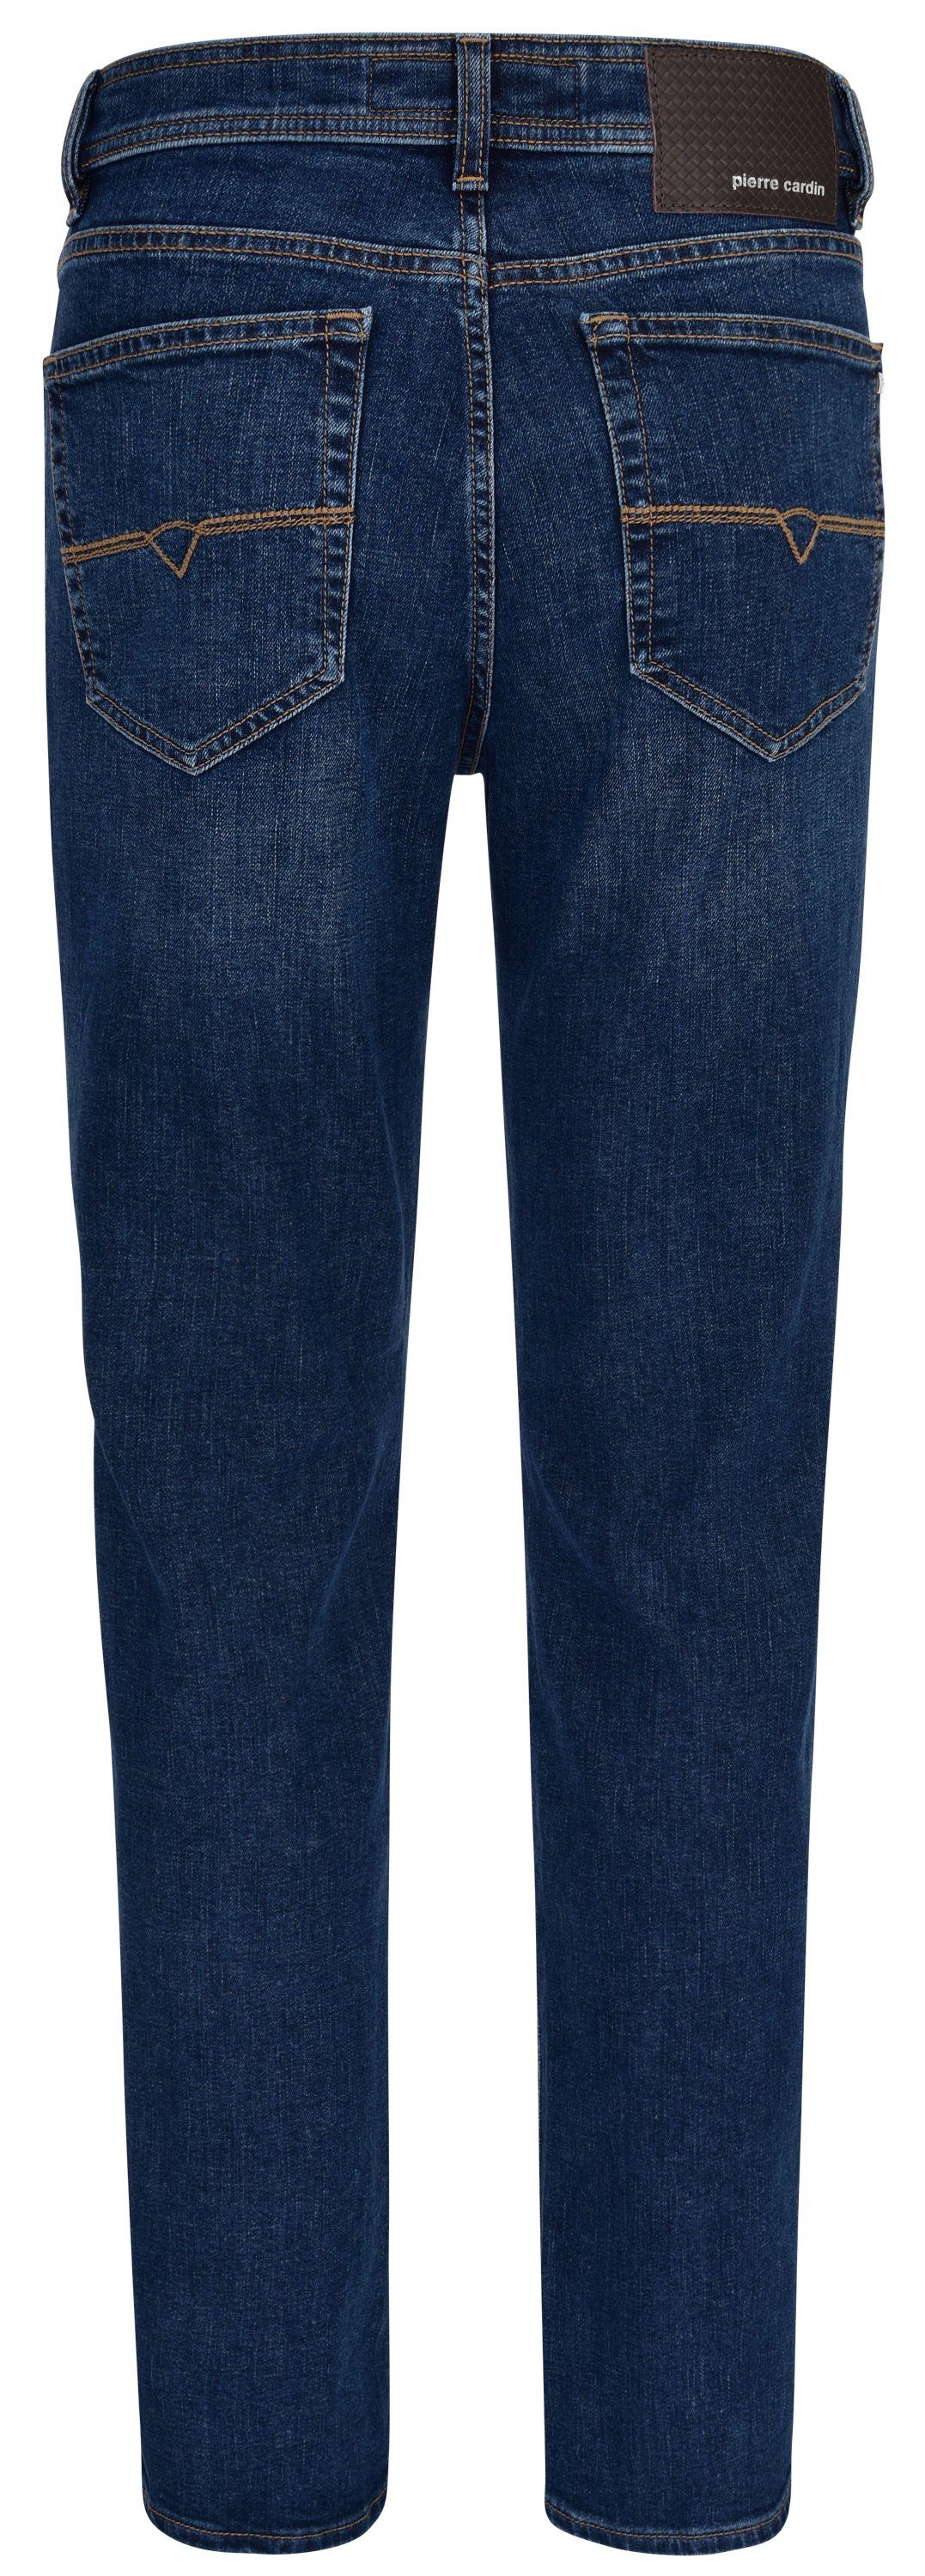 DENIM DIJON 3231 EDITION Cardin 5-Pocket-Jeans Pierre - CARDIN 7350.07 PIERRE blue